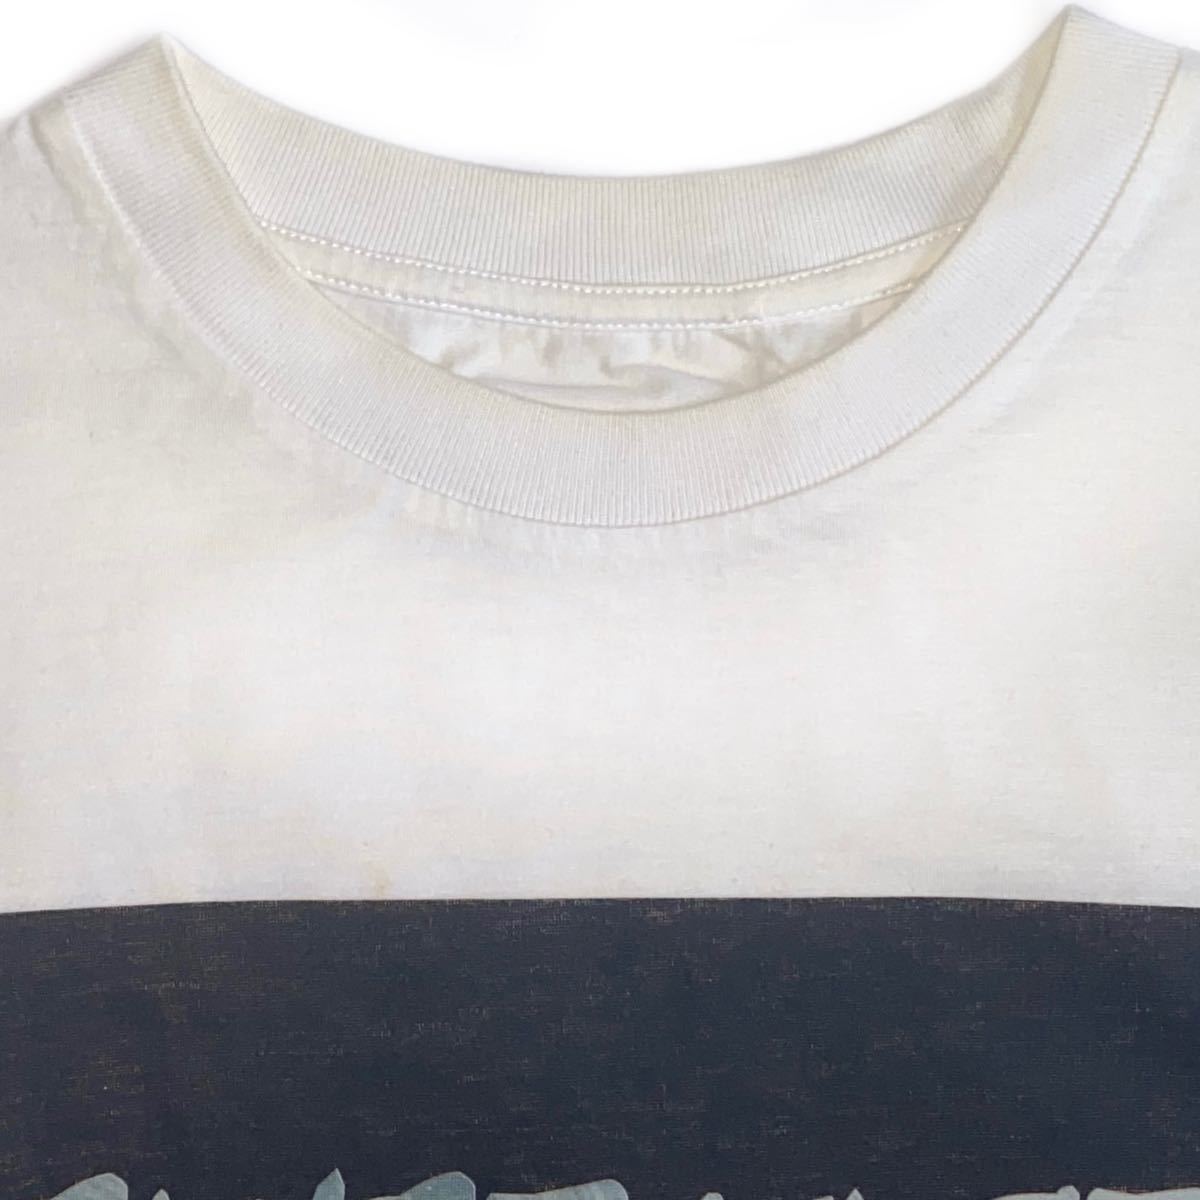 PRADA プラダ プリント 半袖 Tシャツ Tee トップス アーカイブ メンズ レディース ユニセックス Sサイズ 限定品